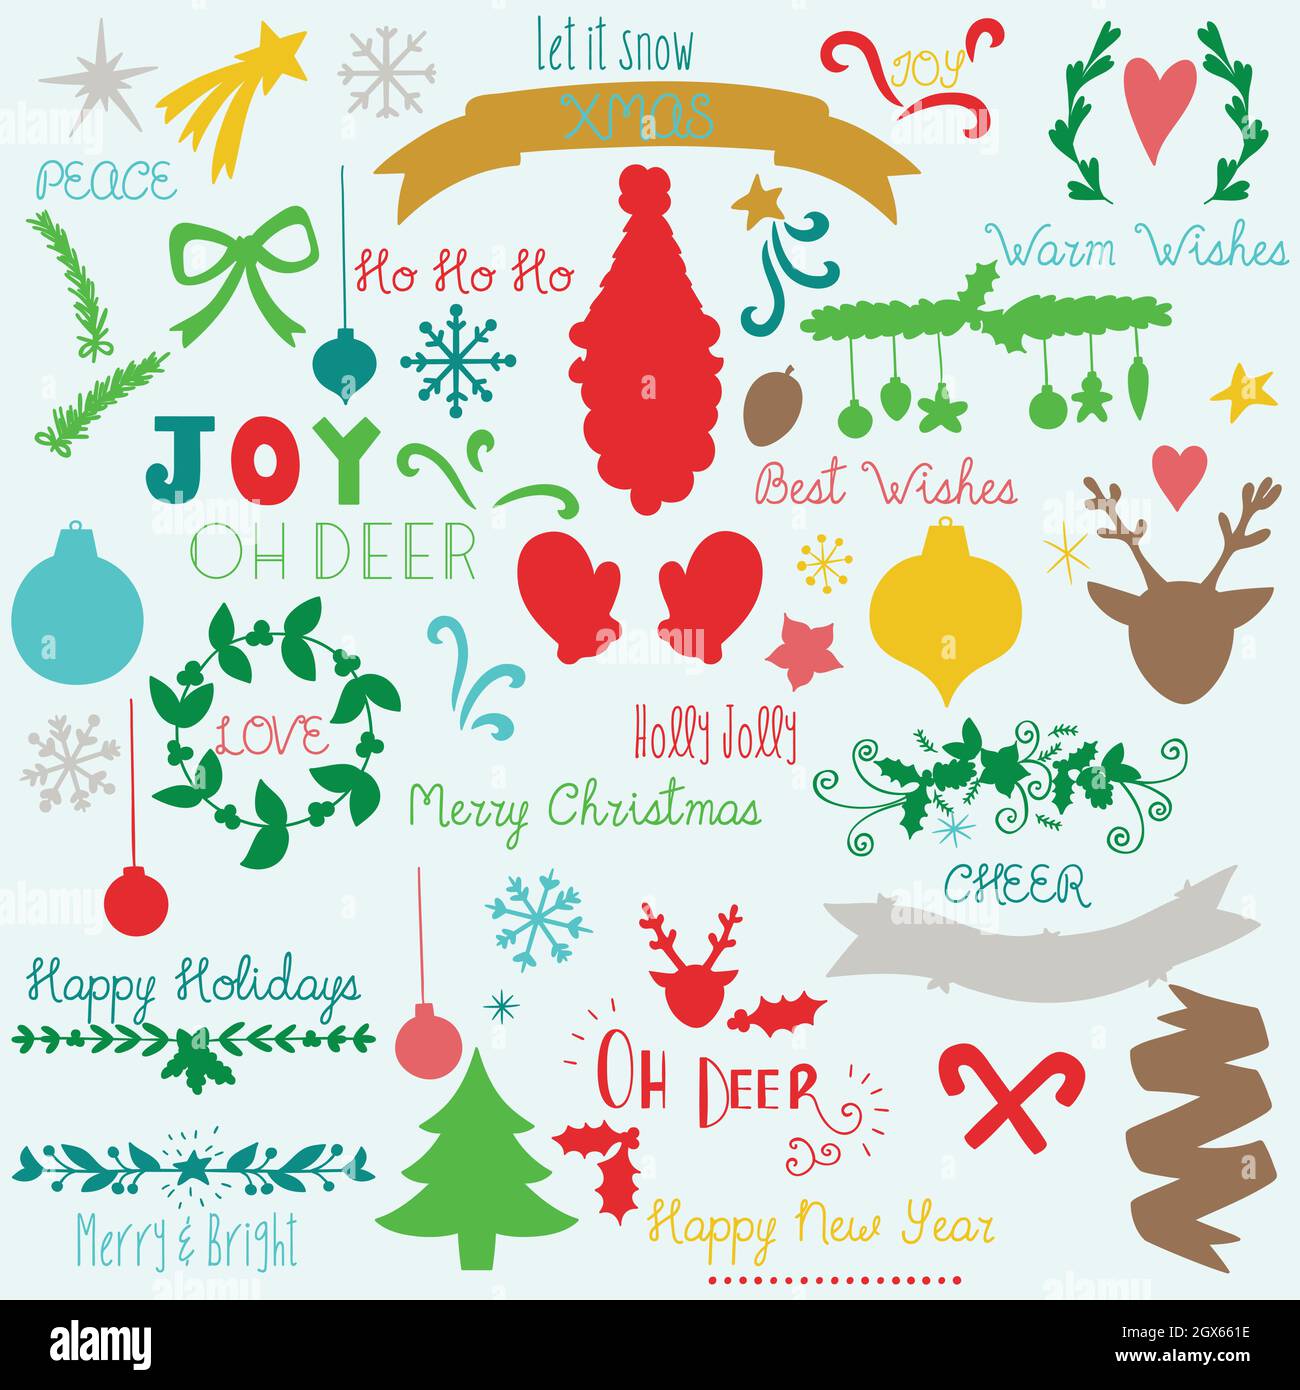 Handgezeichnete Weihnachtselemente. Weihnachtsdekoration, Baum, Weihnachtsmann, Rentiere, Ornament, Stern. Winter-Neujahrsparty. Farbige Silhouette. Stock Vektor